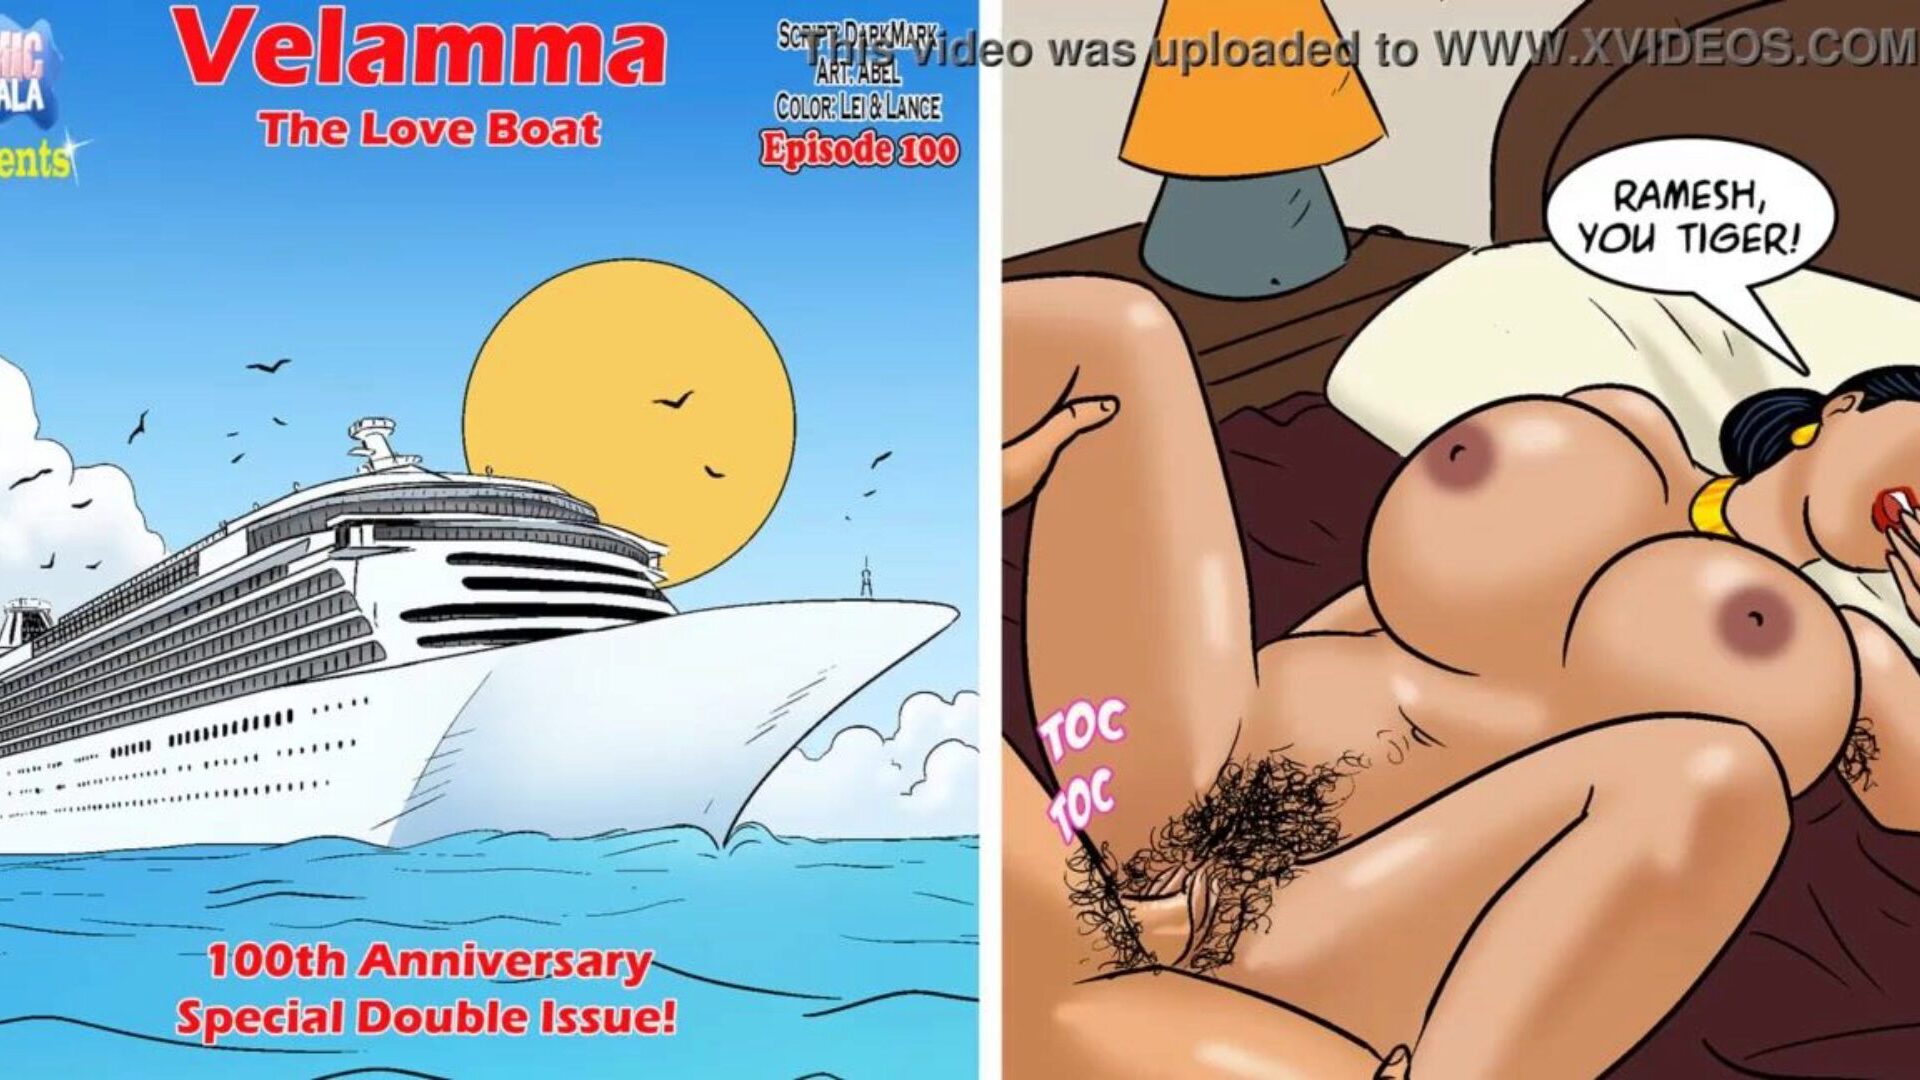 פרק 100 של velamma - סירת האהבה